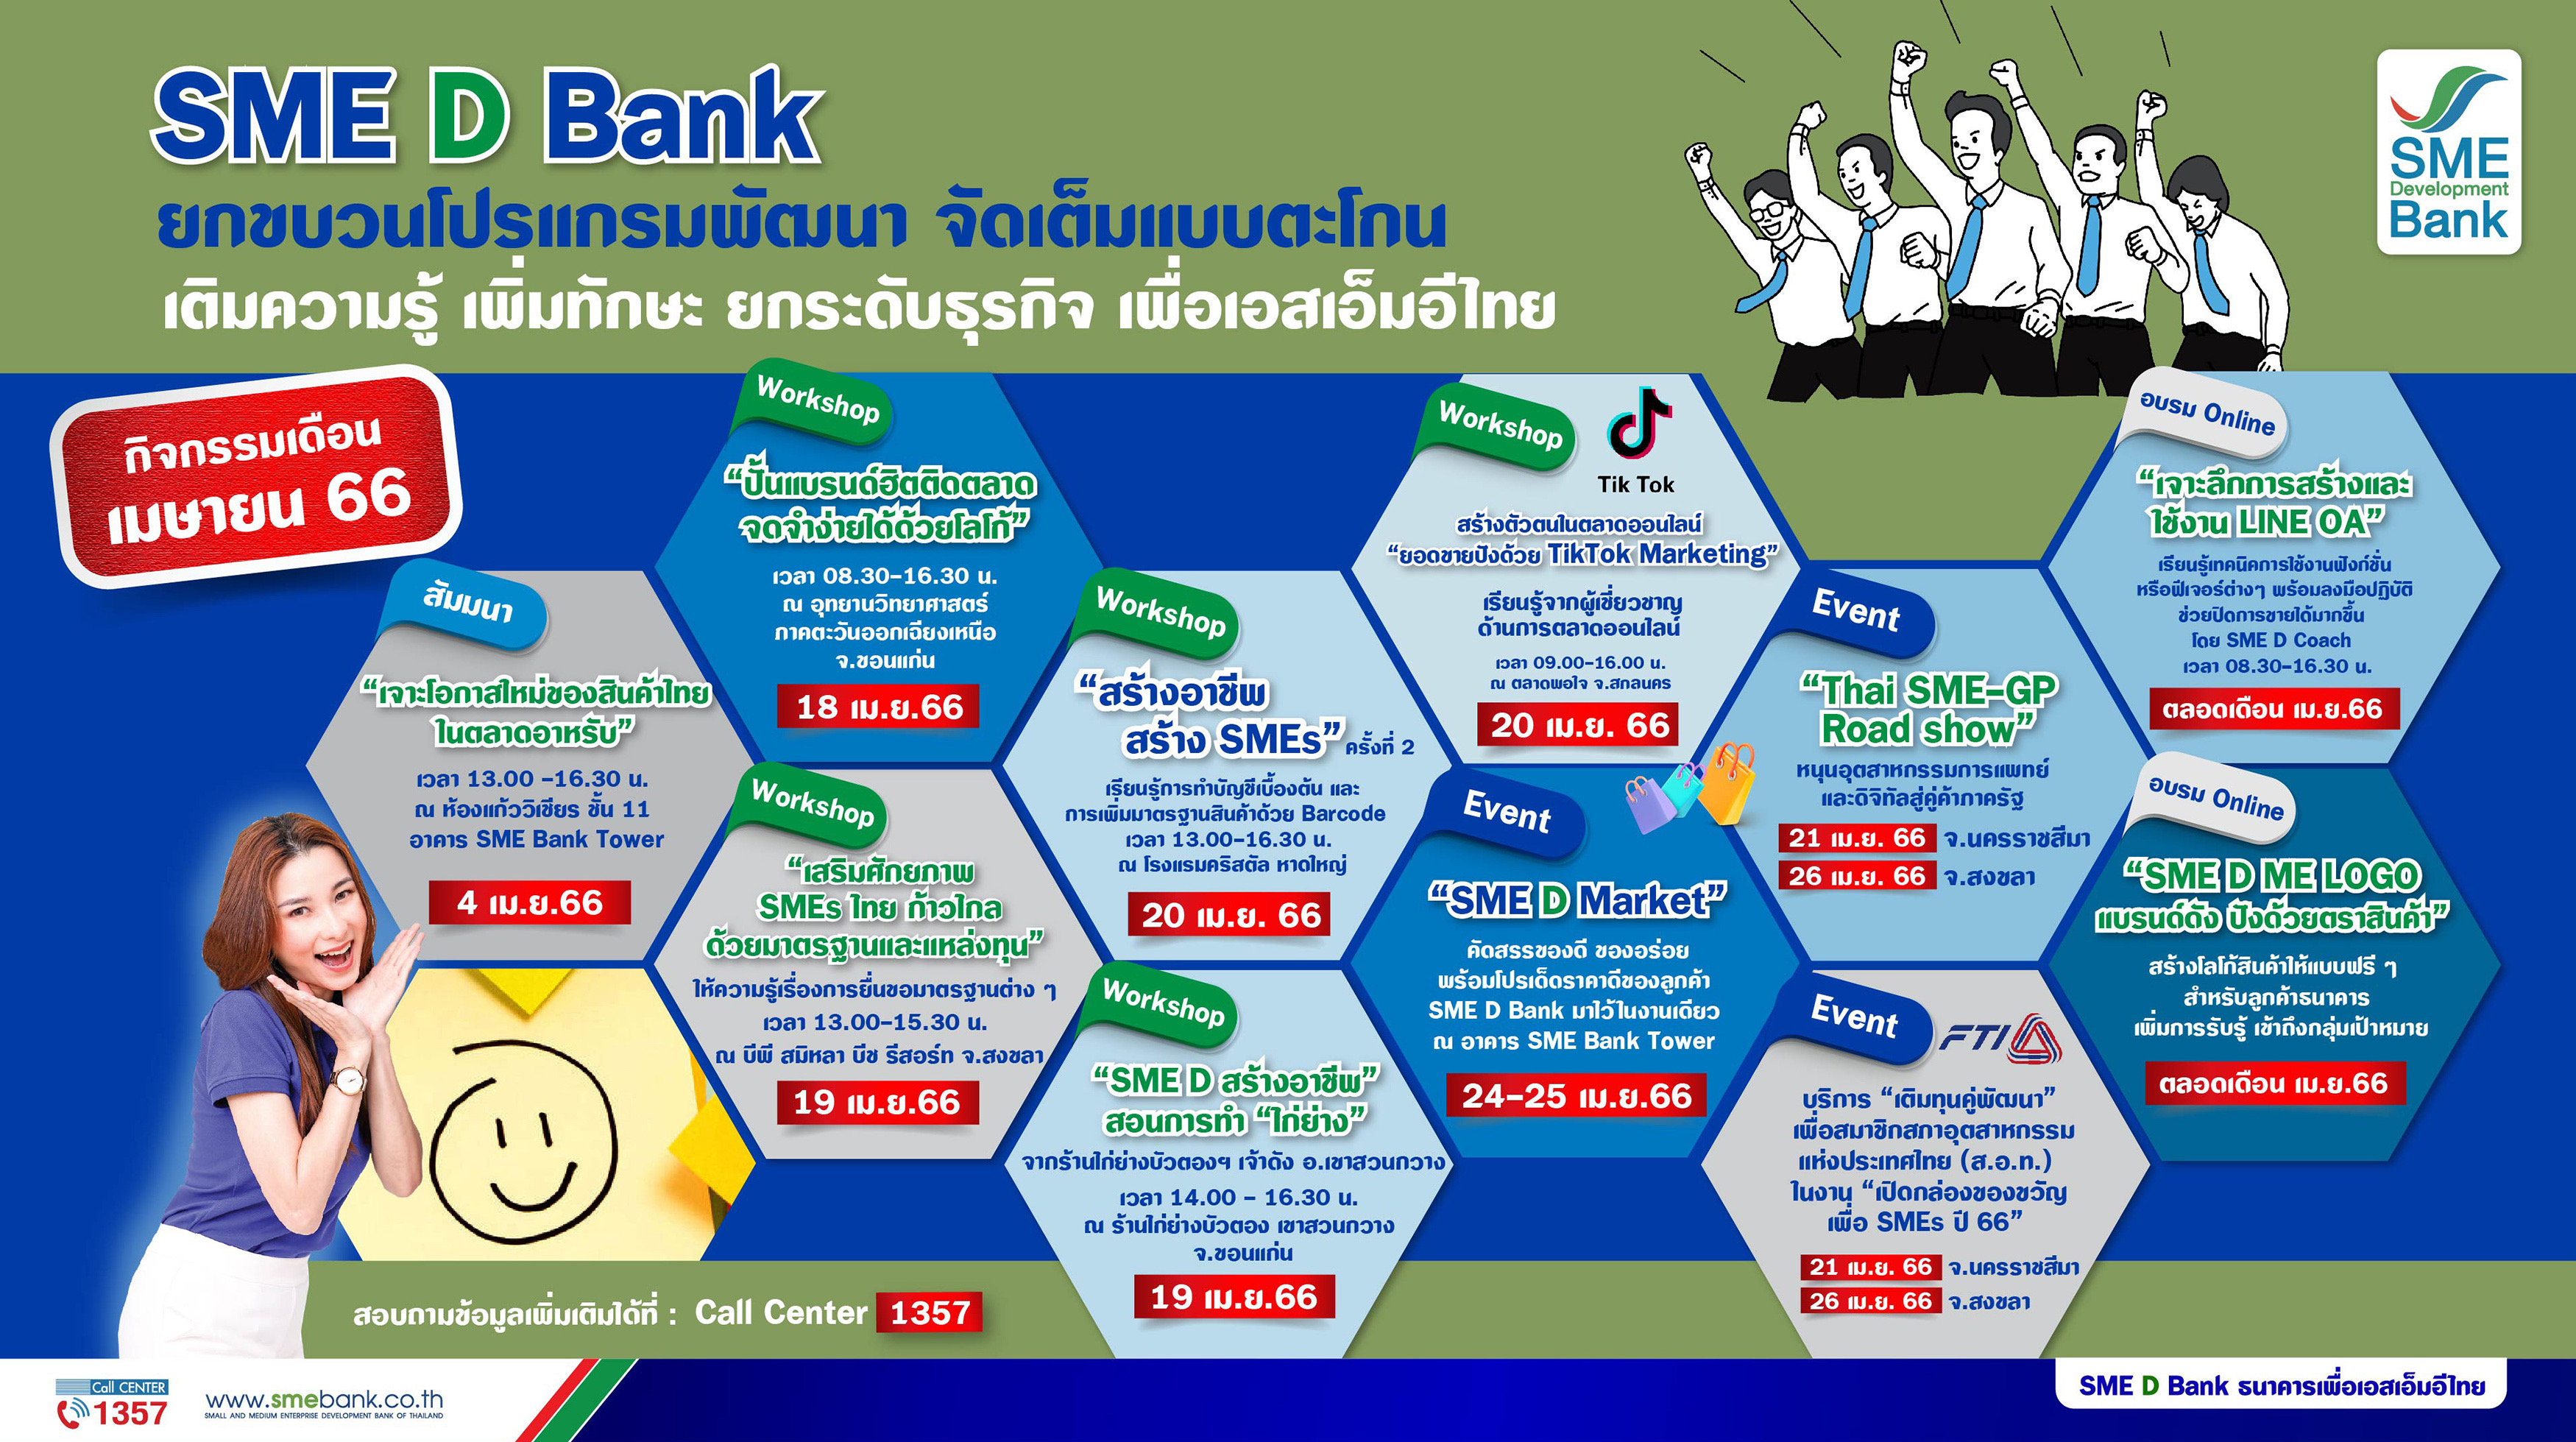 SME D Bank จัดเต็มโปรแกรมพัฒนาเสริมแกร่งเอสเอ็มอีไทย ตลอดเดือน เม.ย.66